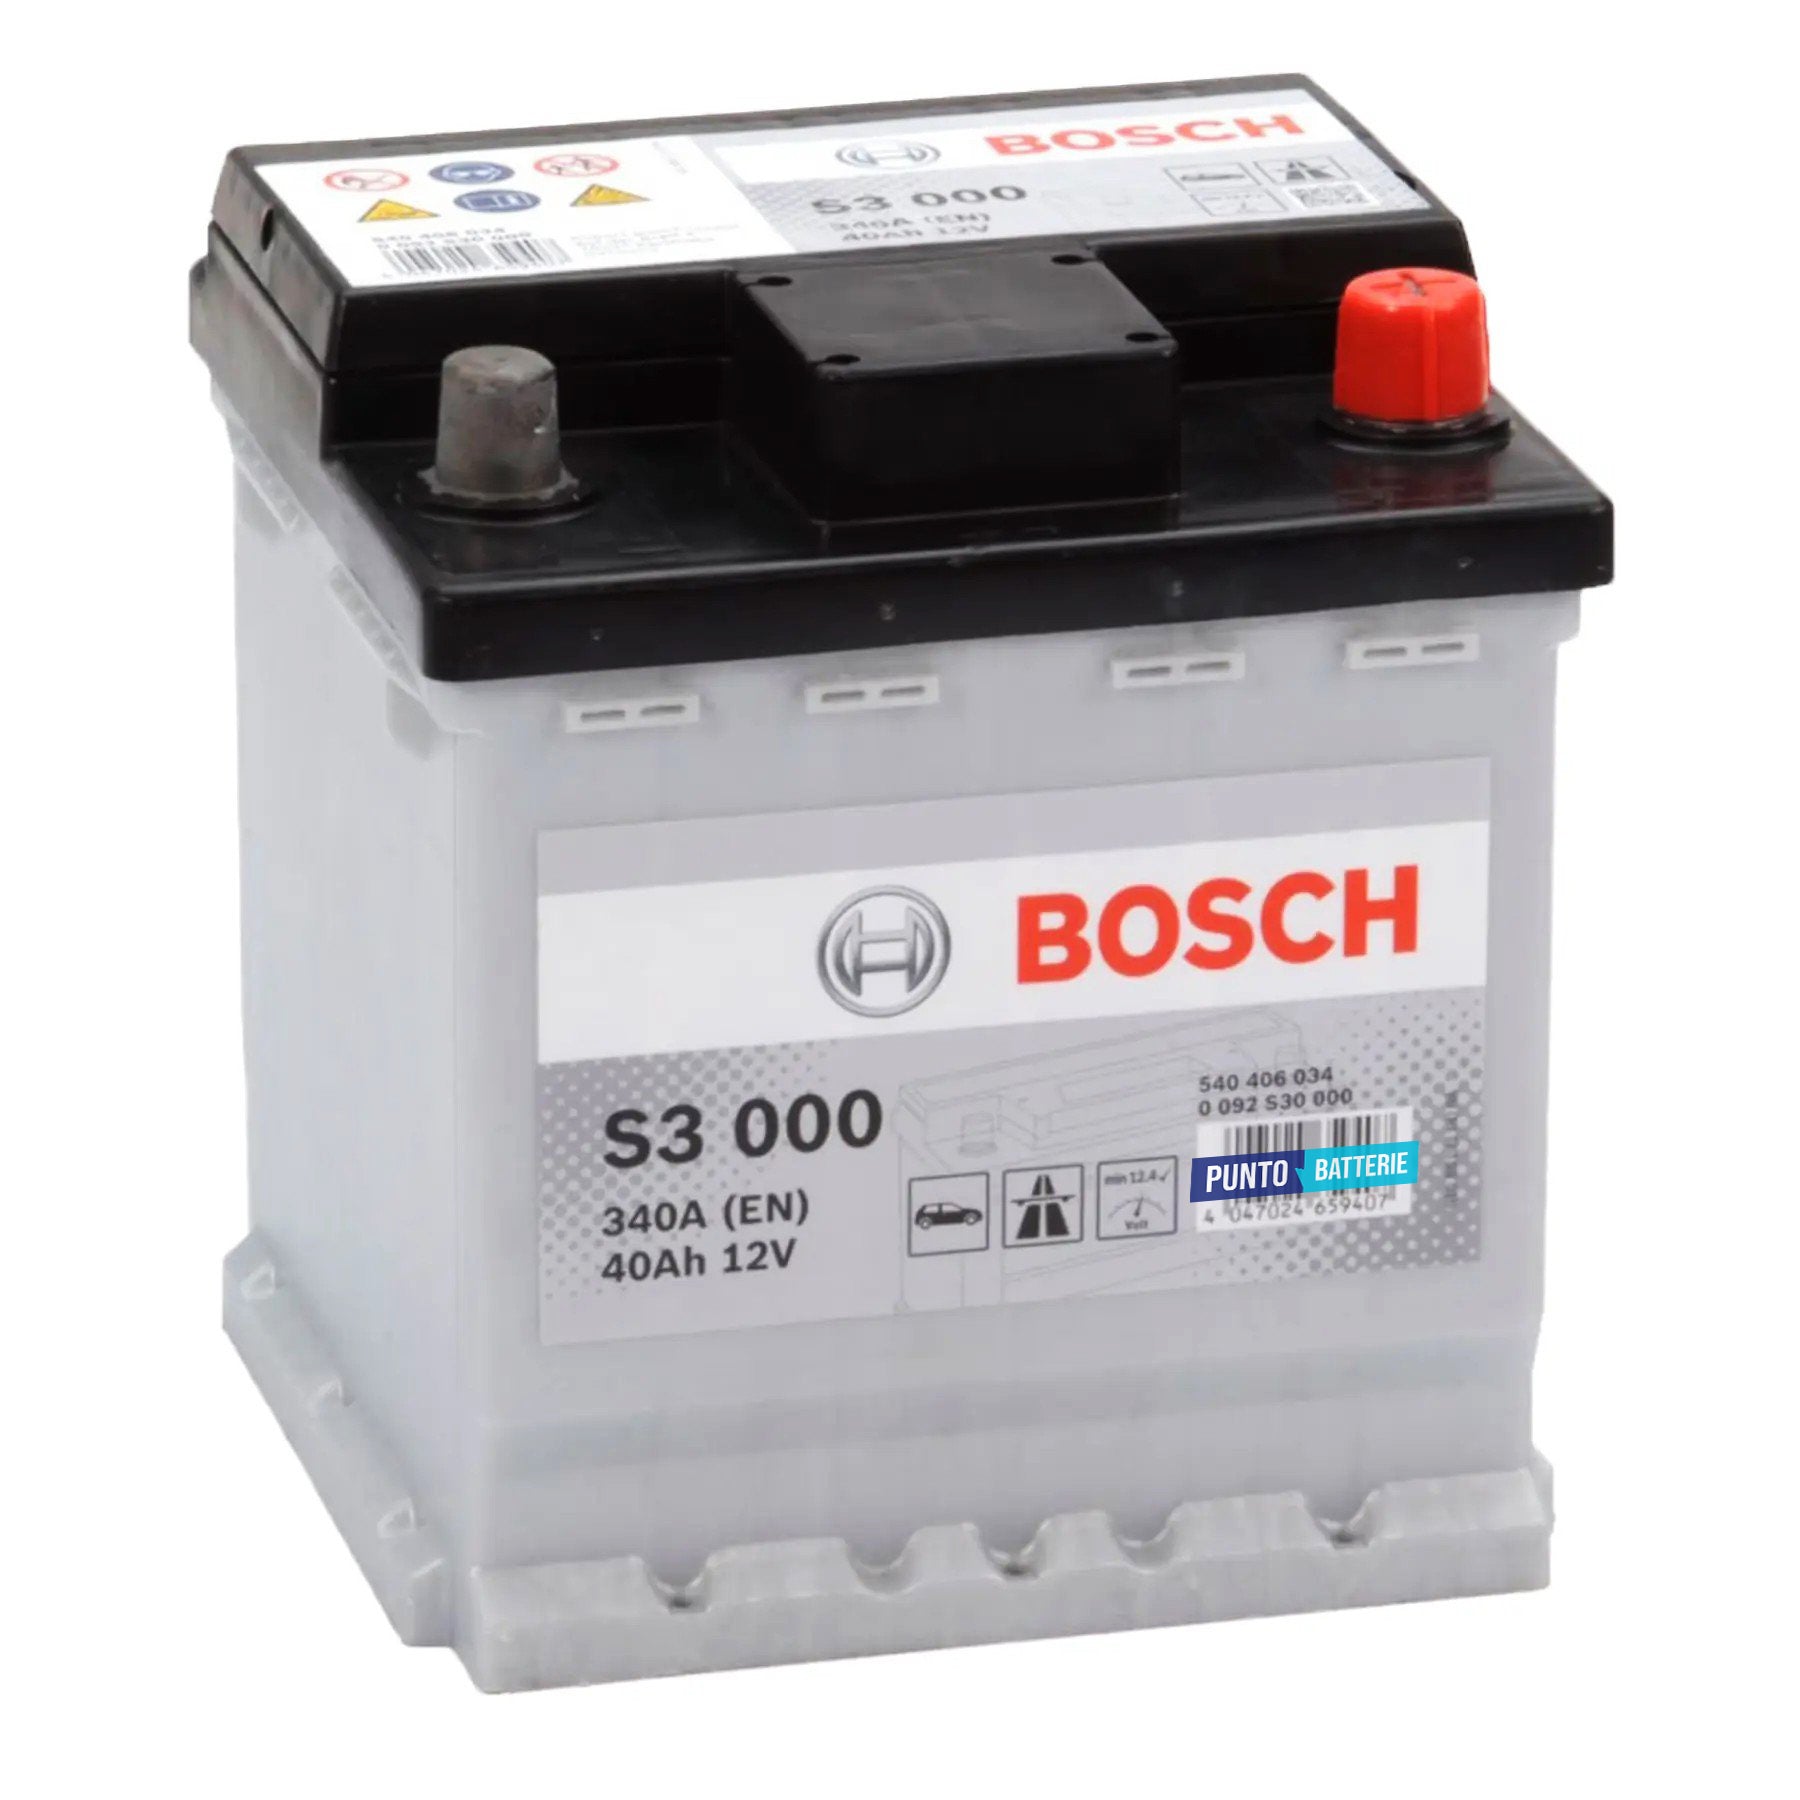 Batteria originale Bosch S3 S3 000, dimensioni 175 x 175 x 190, polo positivo a destra, 12 volt, 40 amperora, 340 ampere. Batteria per auto e veicoli leggeri.